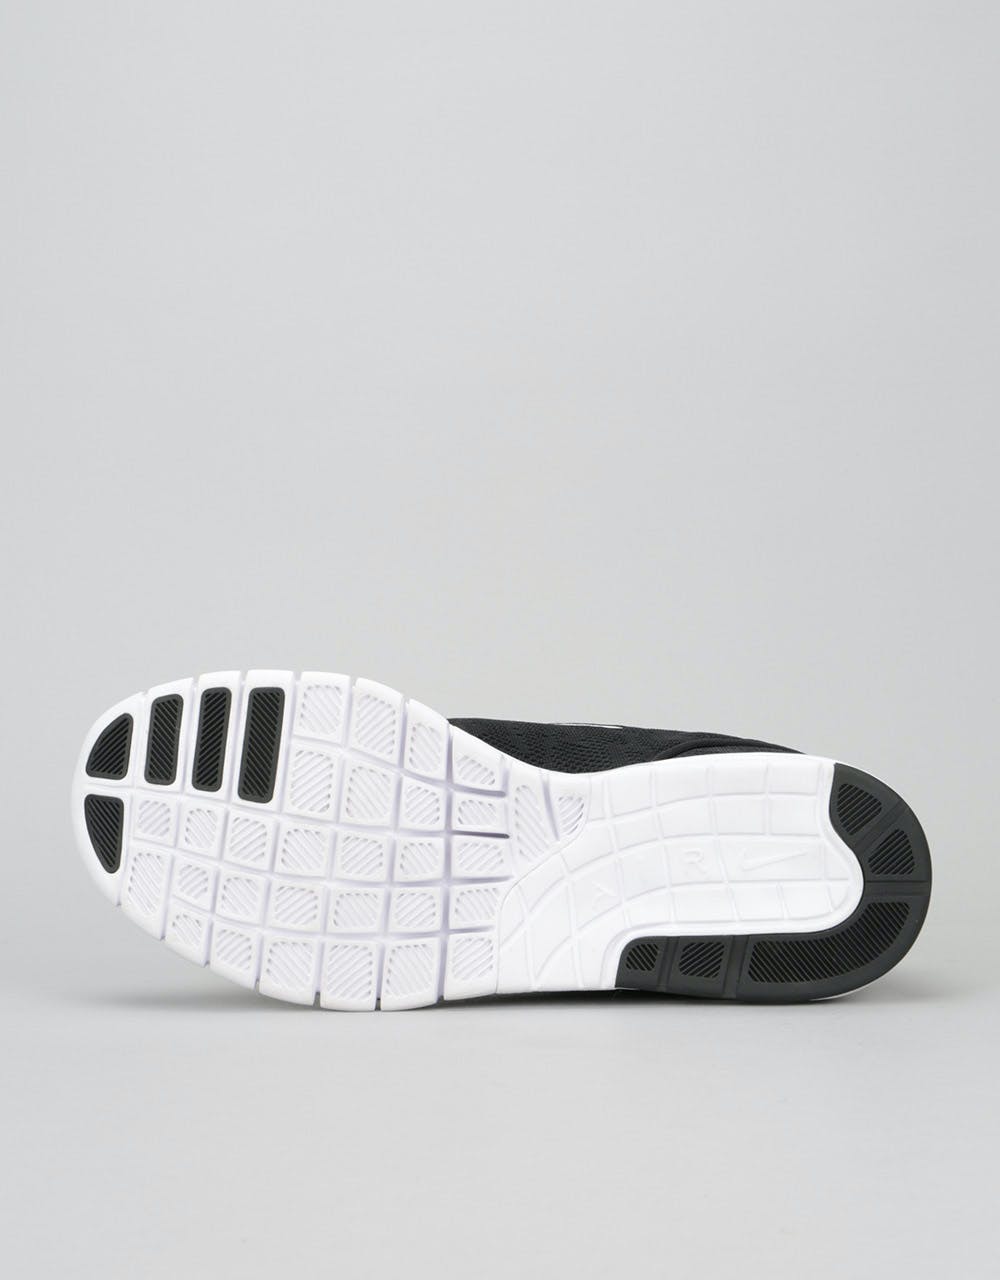 Nike SB Stefan Janoski Max Shoes - Black/White